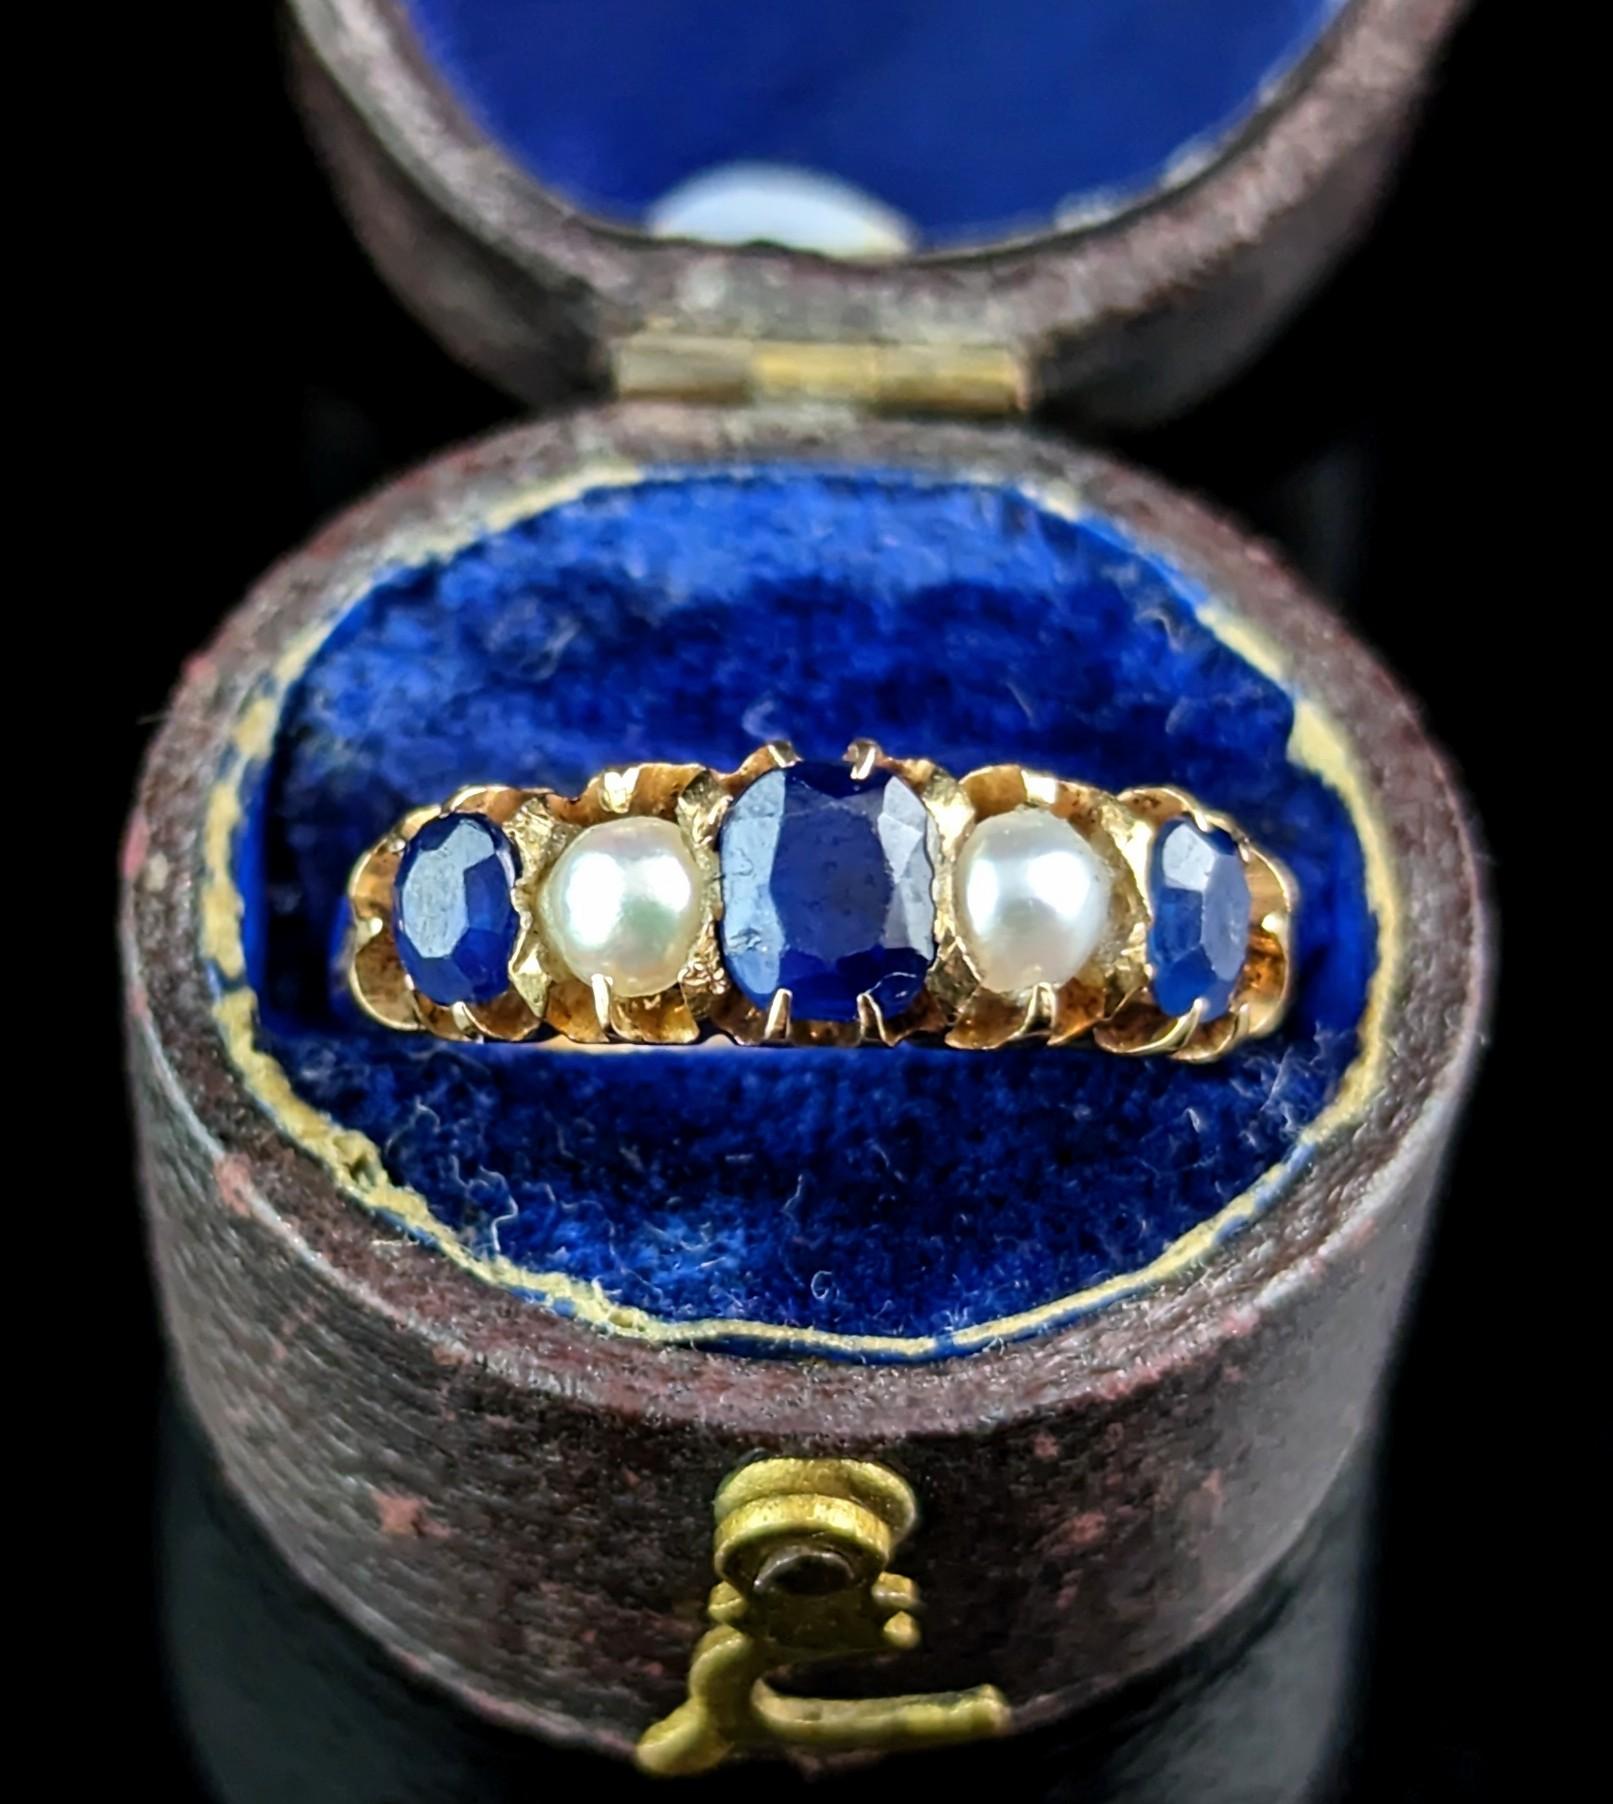 Die prächtigen Saphire in diesem prächtigen antiken Ring sind wirklich der Blickfang dieses Stücks.

Ein so schönes und sattes Tiefblau, ein königliches Blau in einem Ring, der für eine Prinzessin geeignet ist. Der Ring besteht aus drei blauen